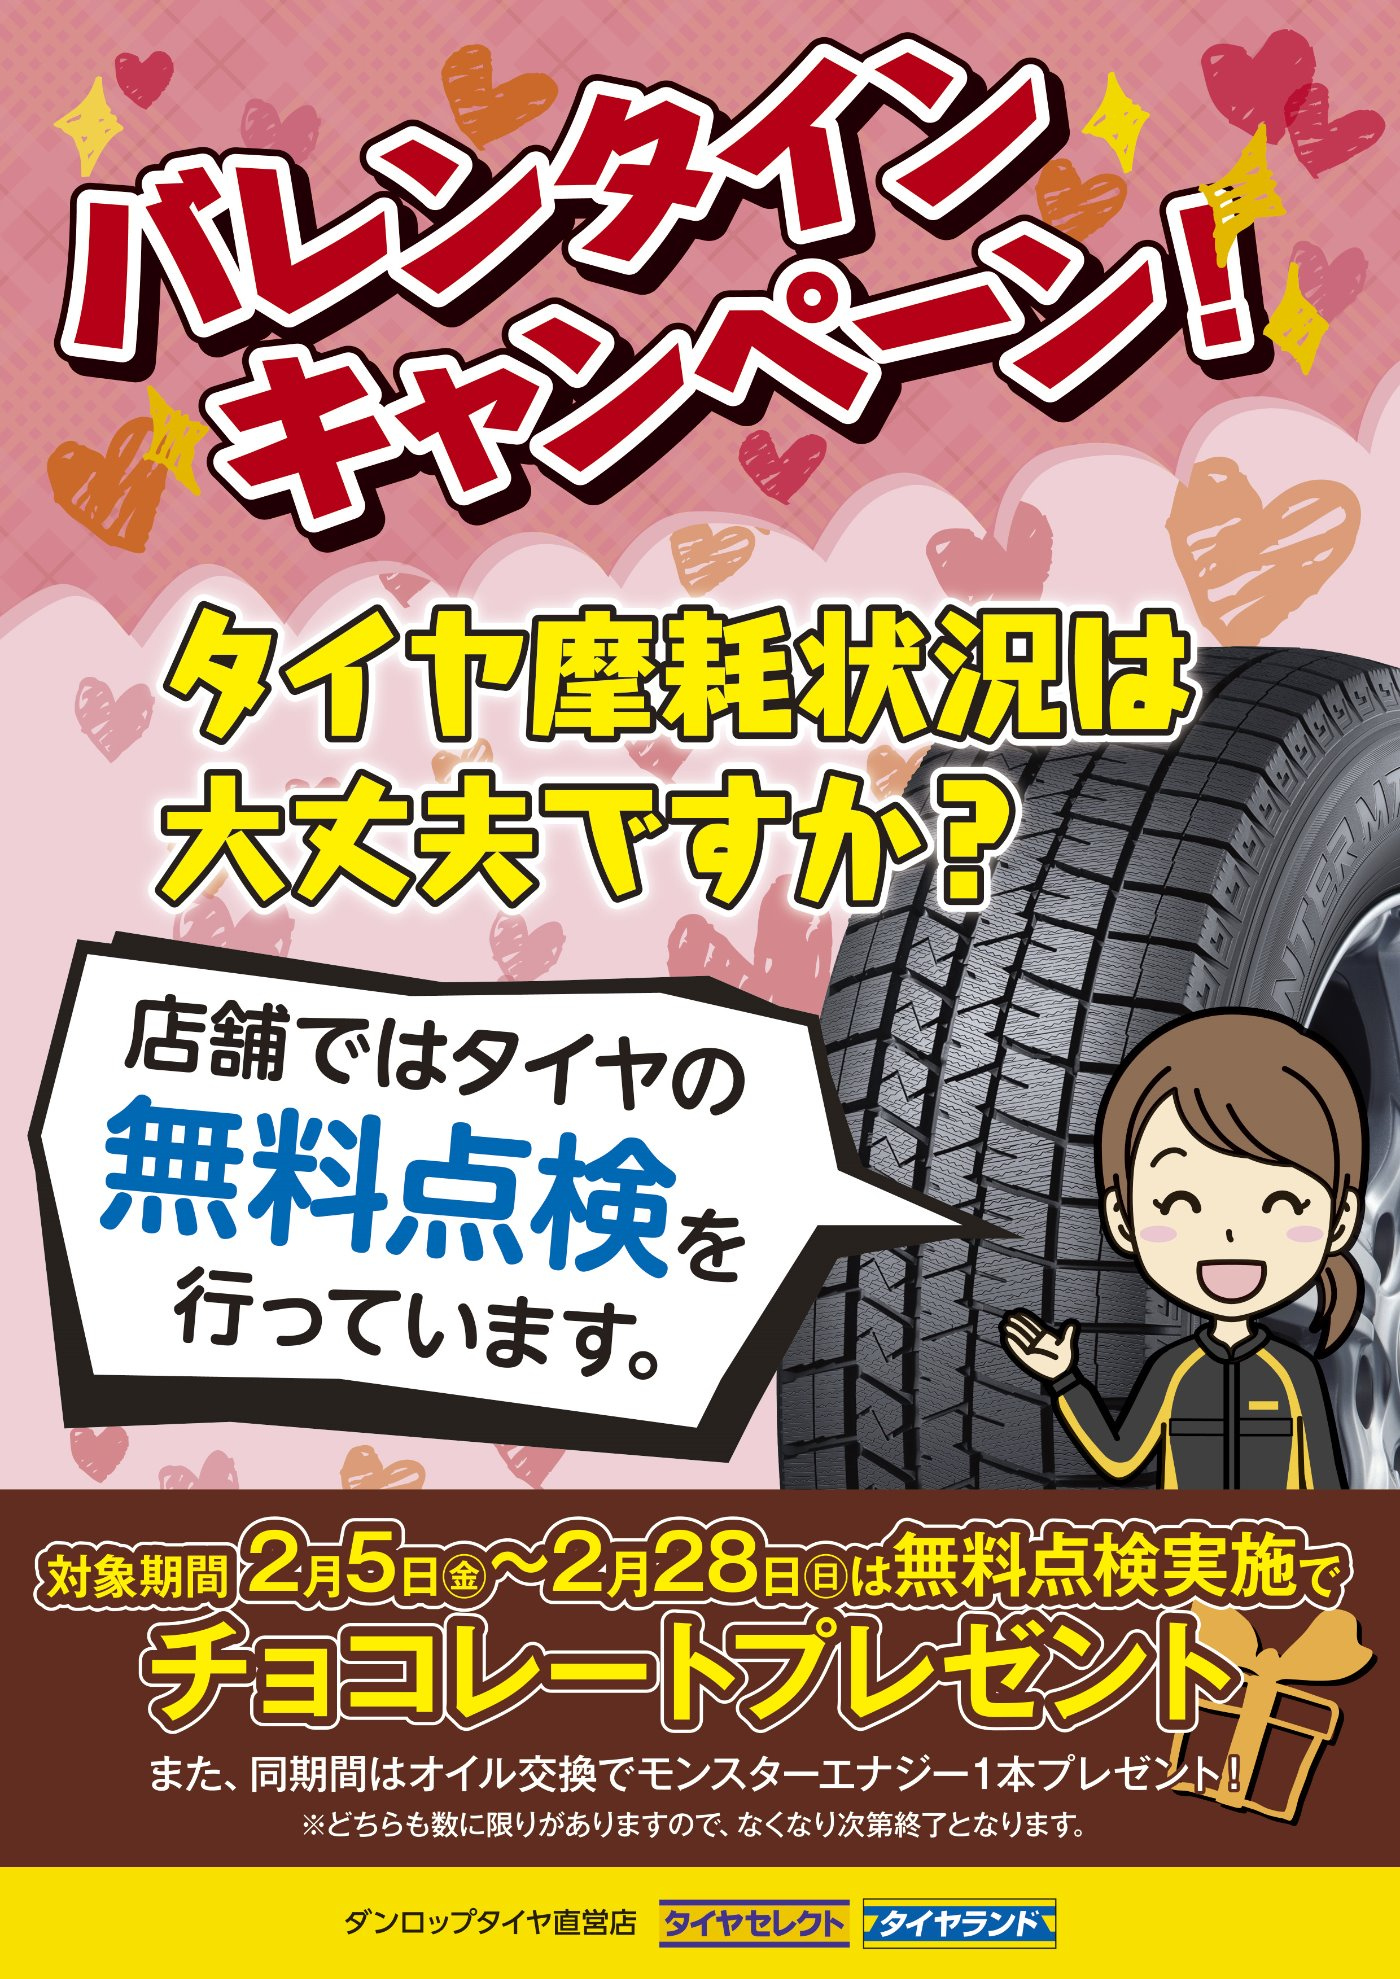 タイヤセレクト帯広 ショップ日記 パンクって恐ろしい W ｳｯ ショップブログ タイヤセレクト帯広 タイヤセレクト タイヤ ランド Dunlop